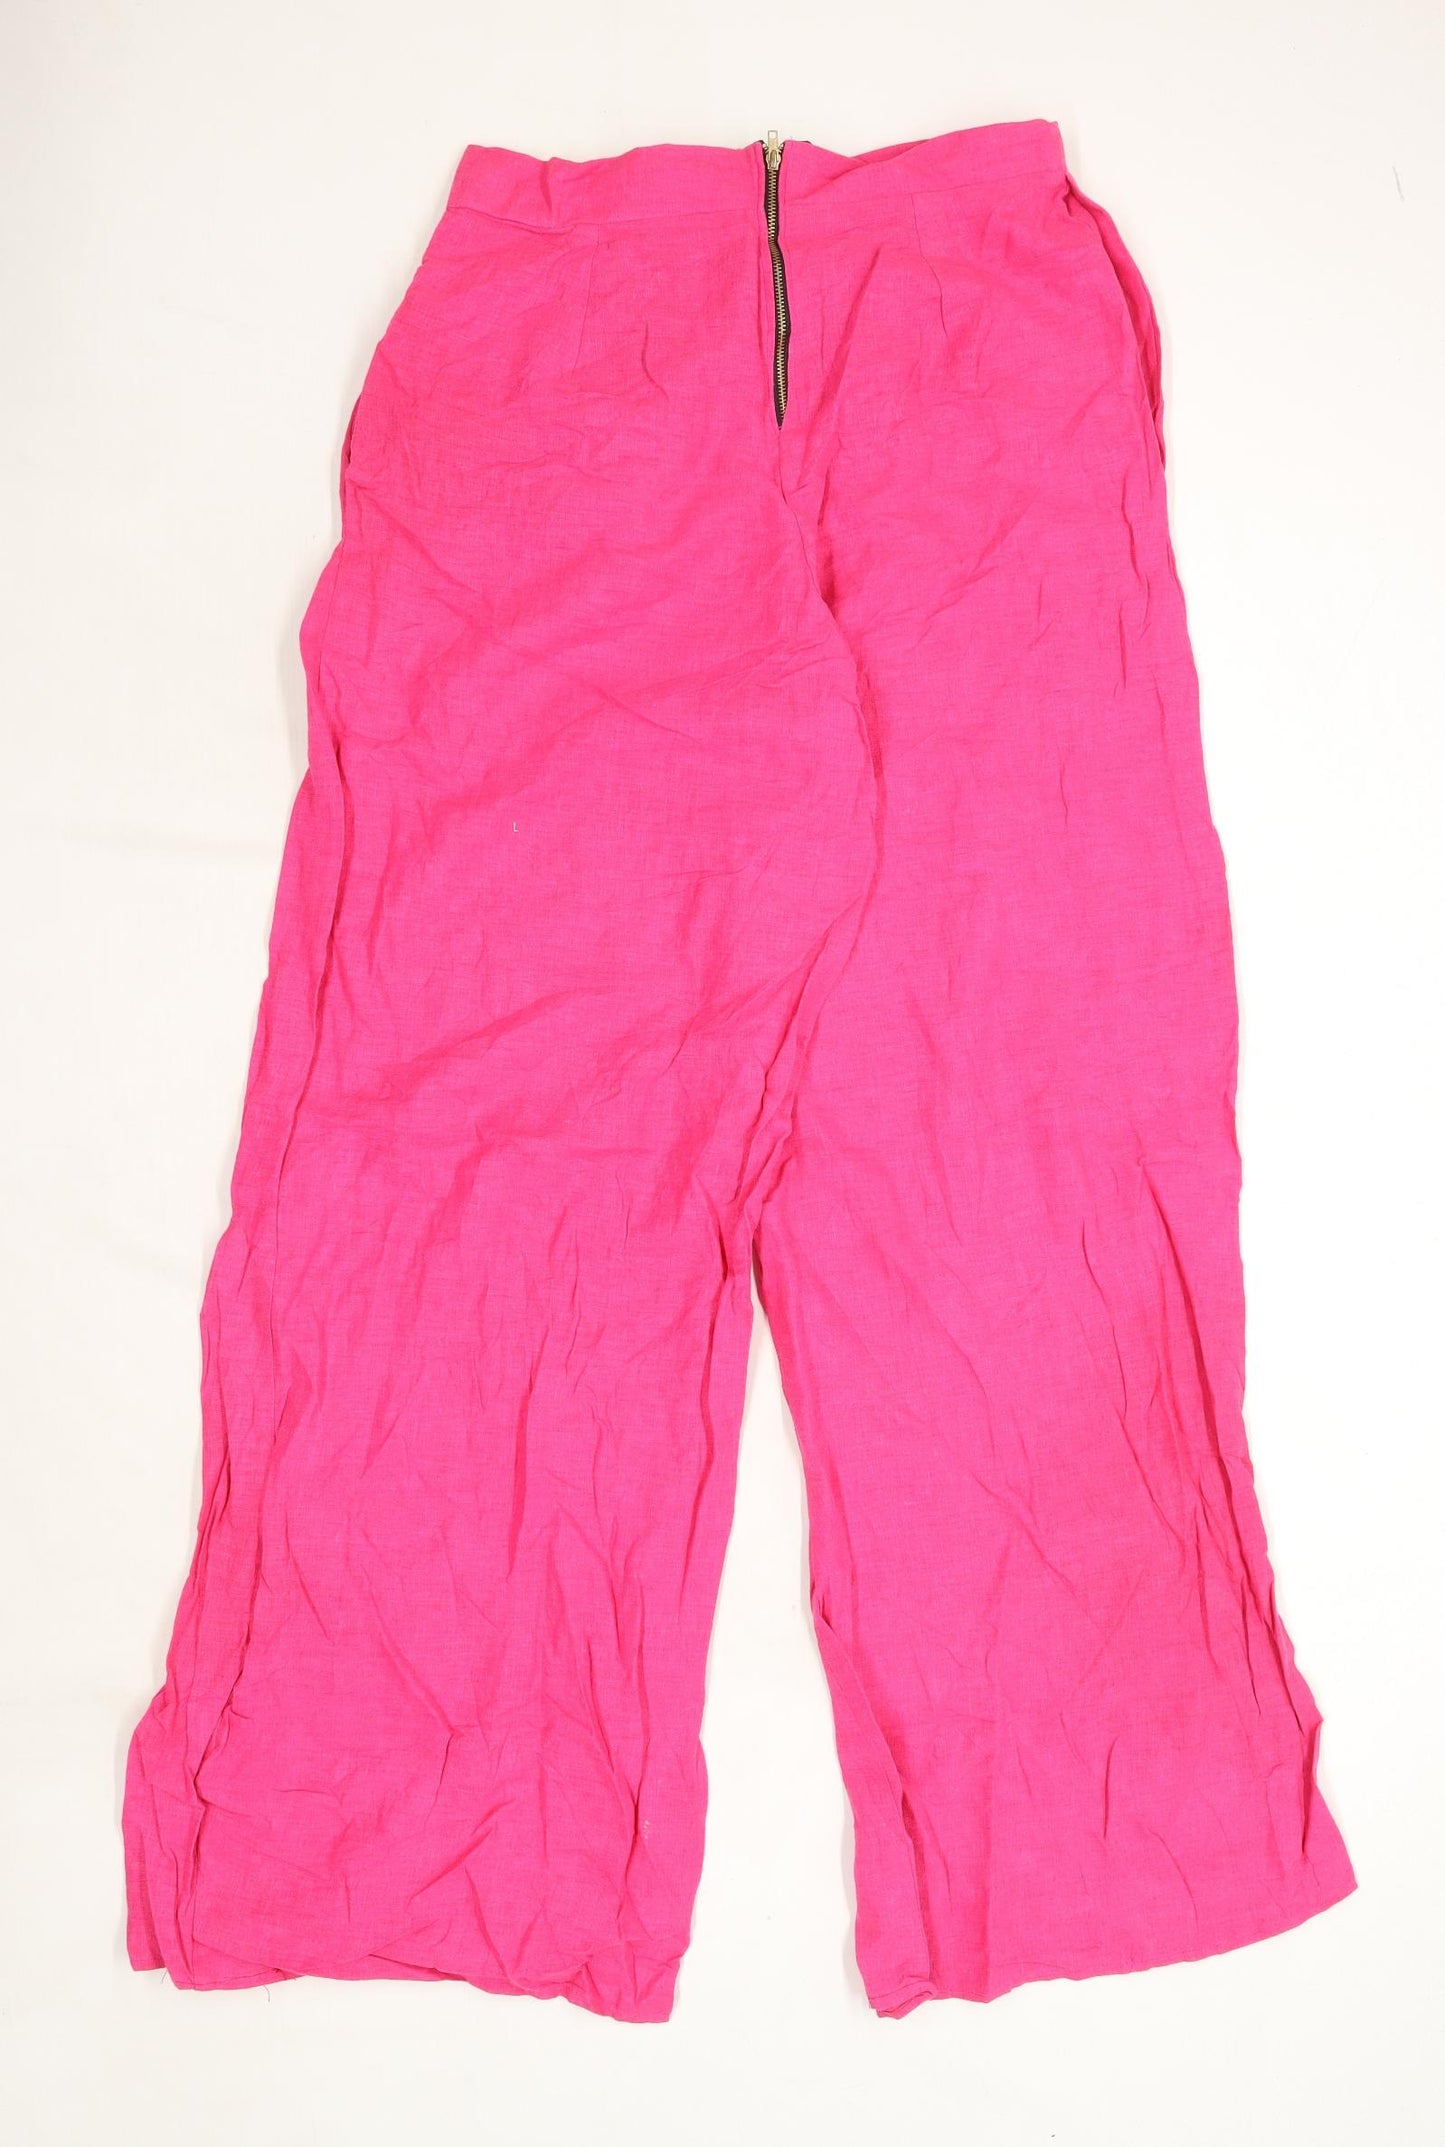 Womens Preworn Pink Linen Trousers Size W28/L30